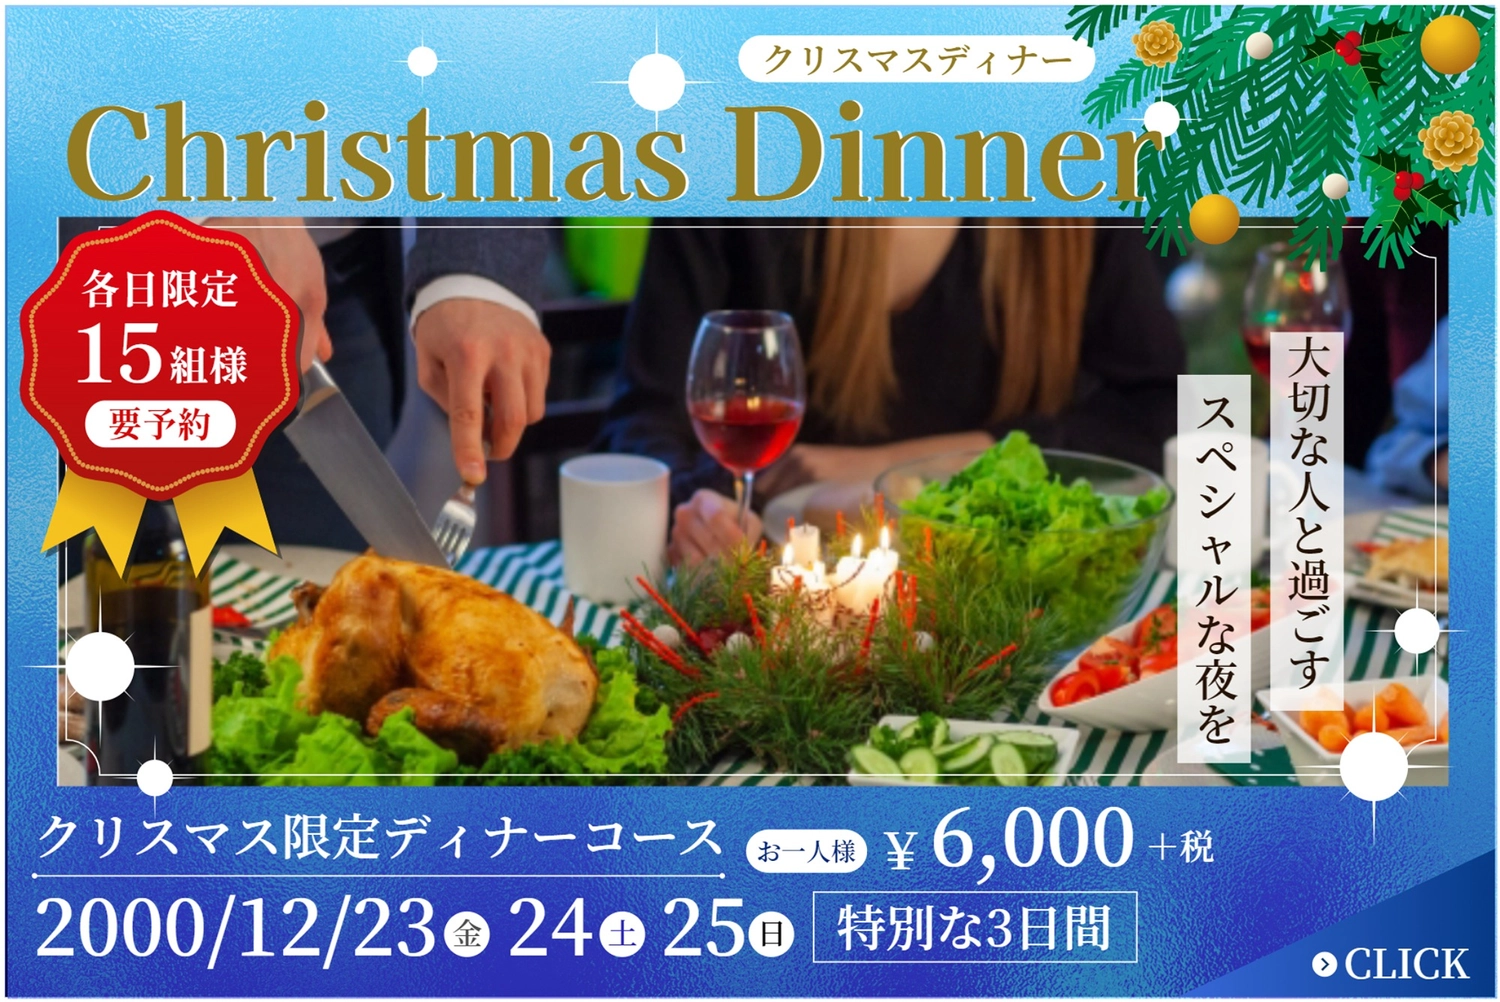 クリスマスディナーバナー, restaurant, design, edit, Banner template